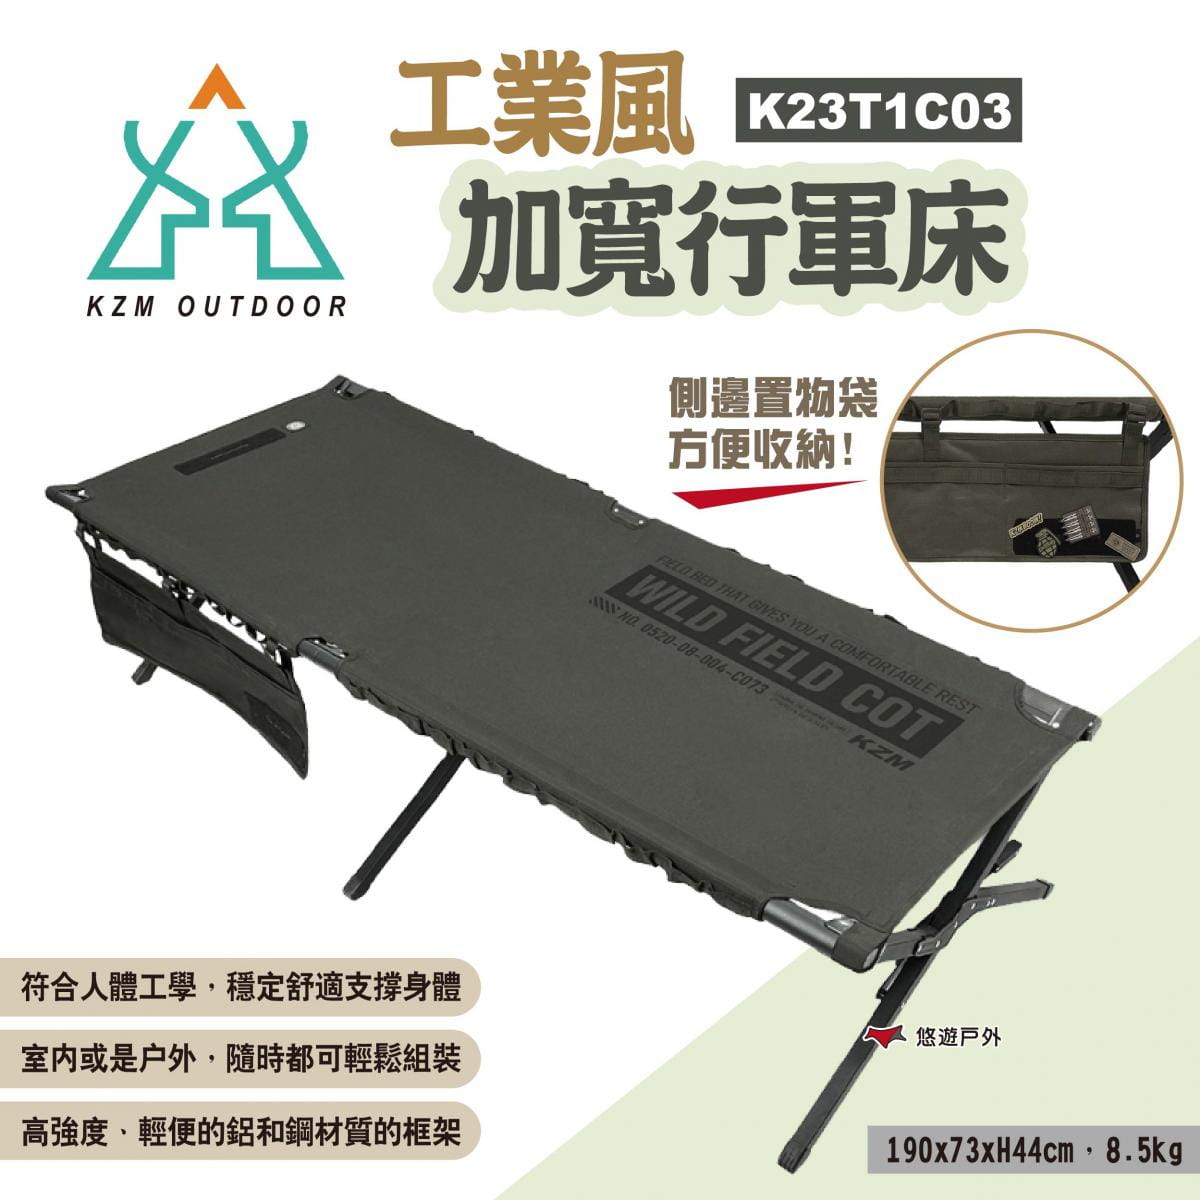 【KZM】工業風加寬行軍床 K23T1C03 悠遊戶外 1